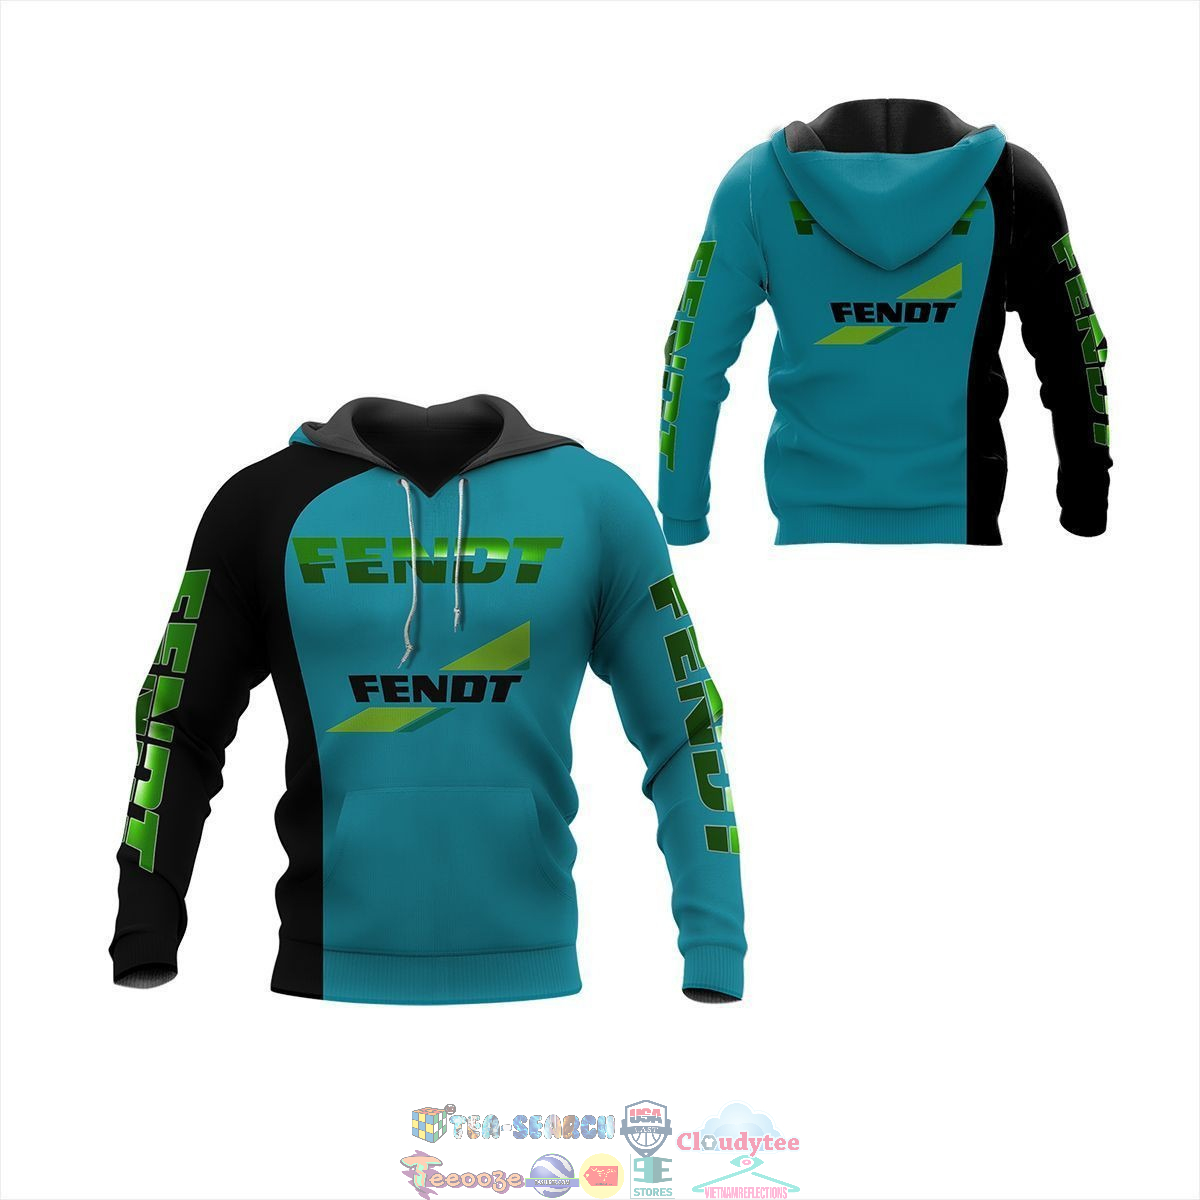 Fendt ver 1 3D hoodie and t-shirt – Saleoff